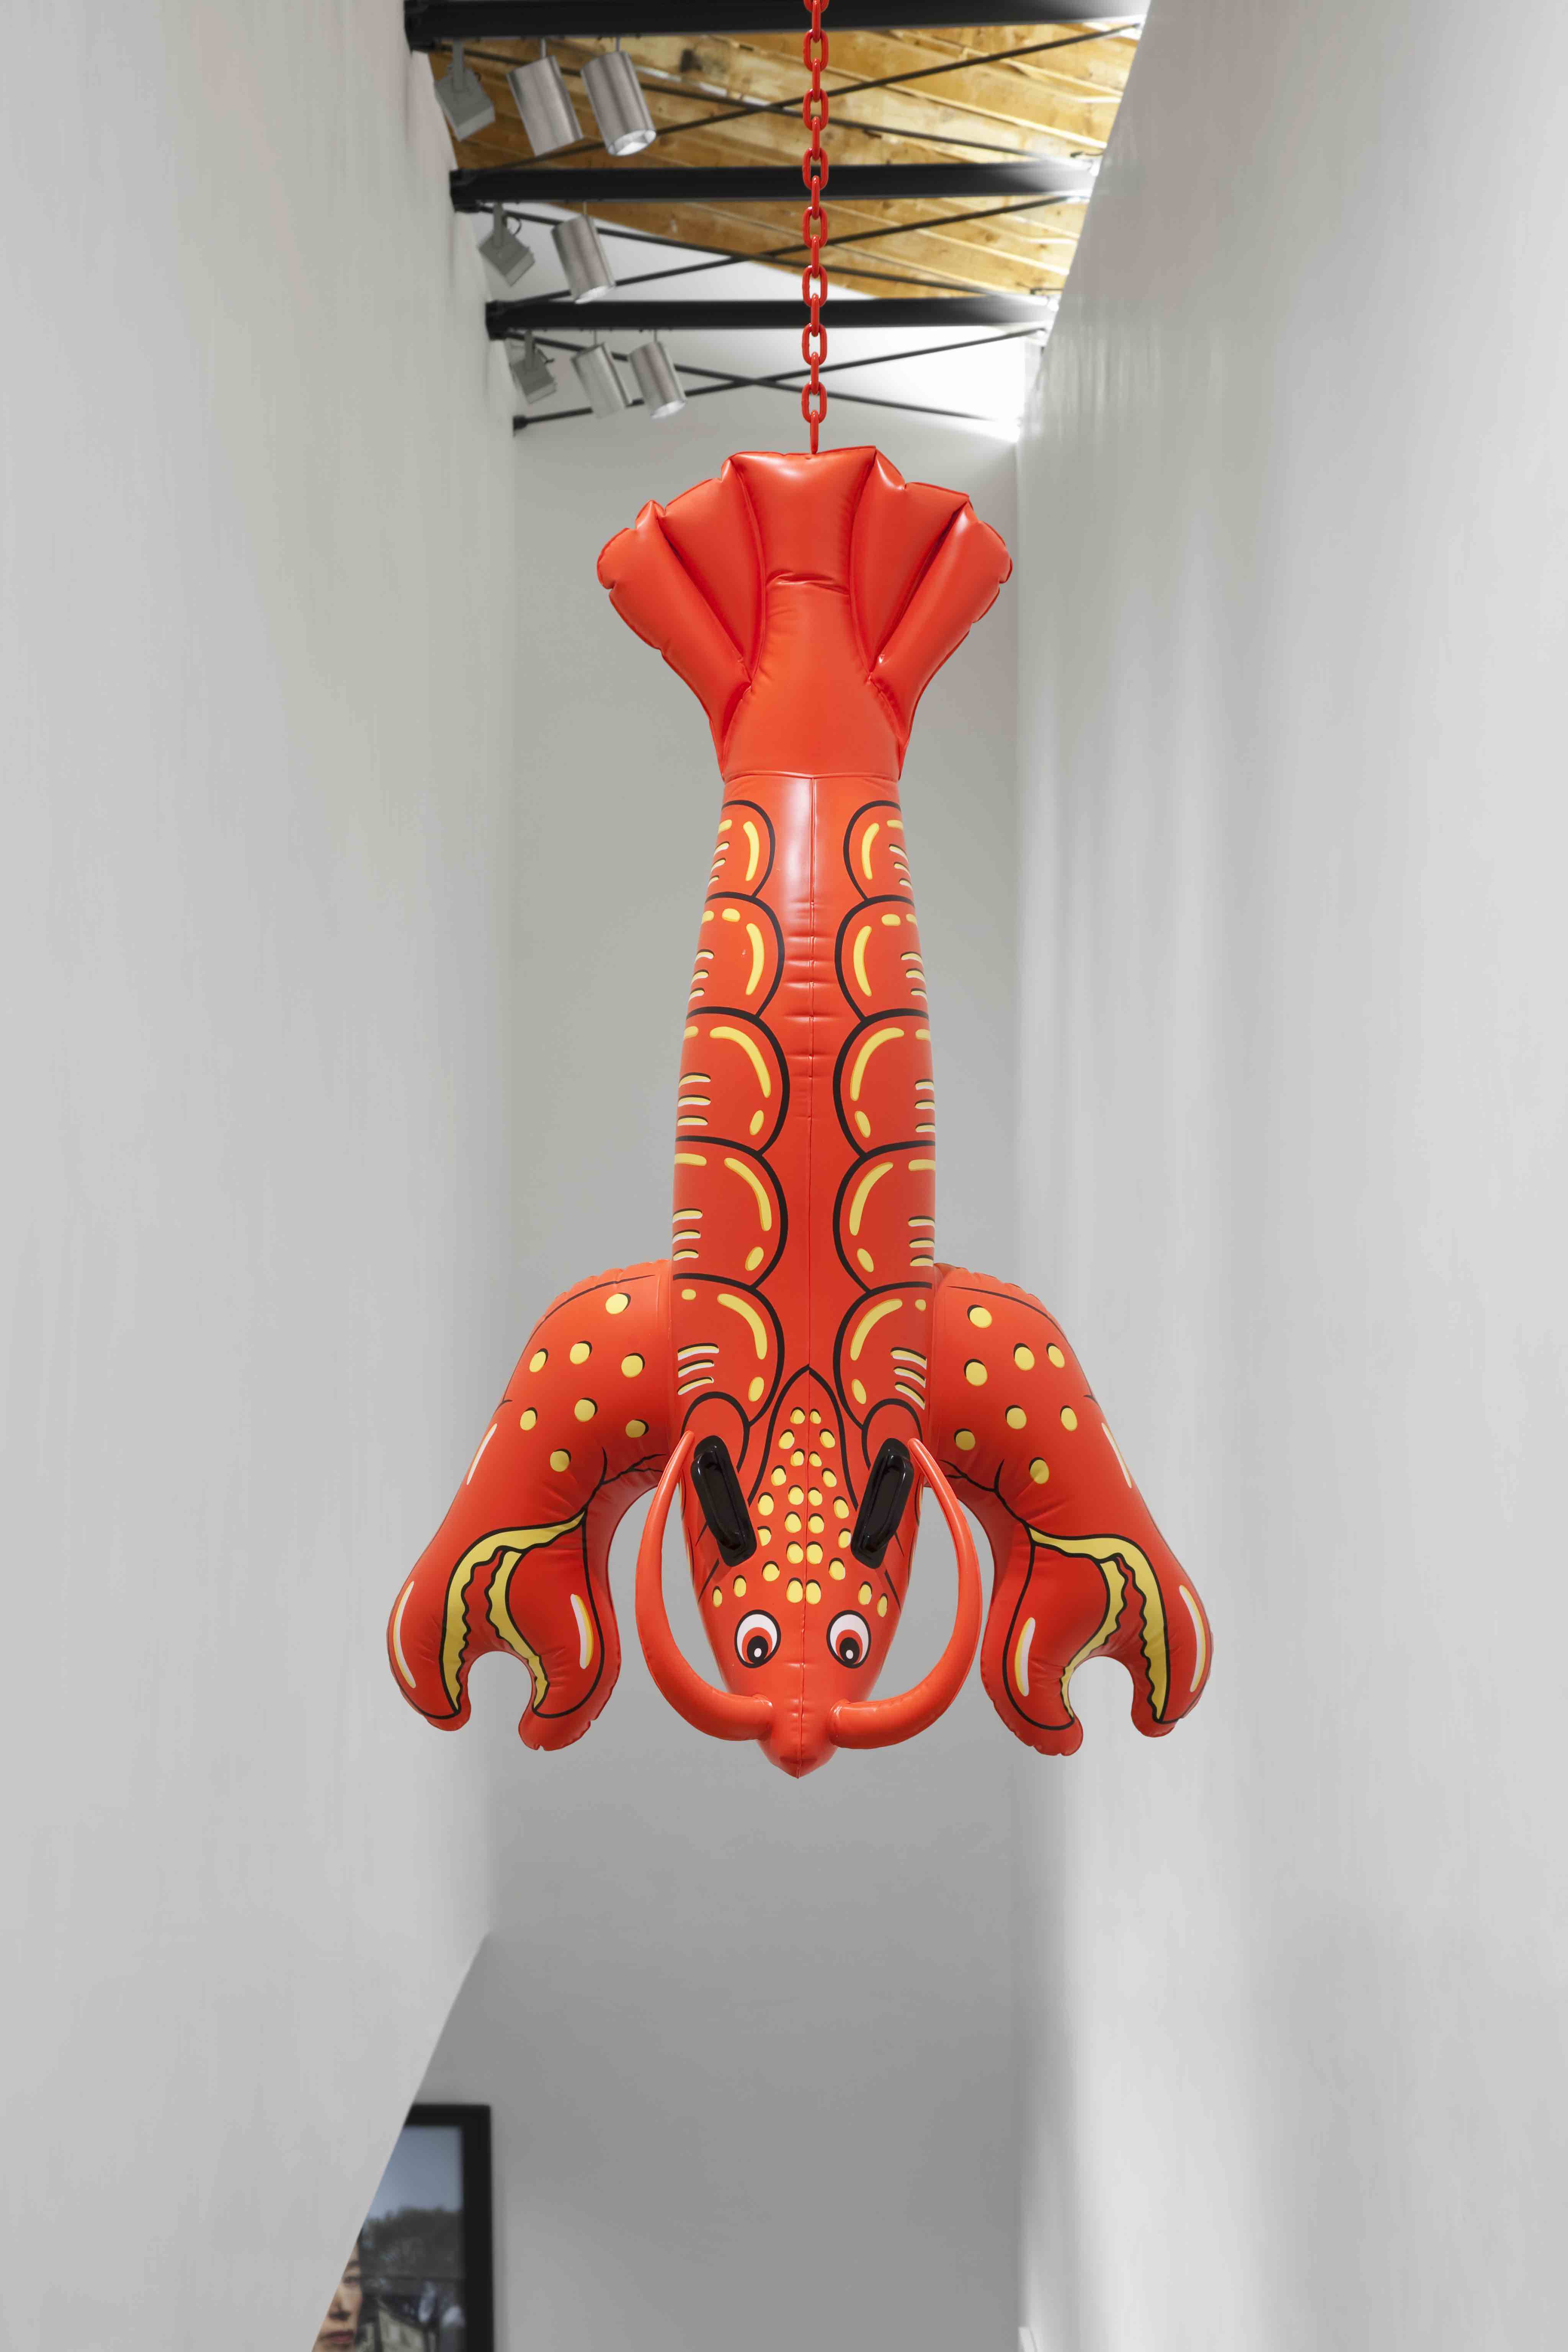 Jeff Koons
Lobster, 2003